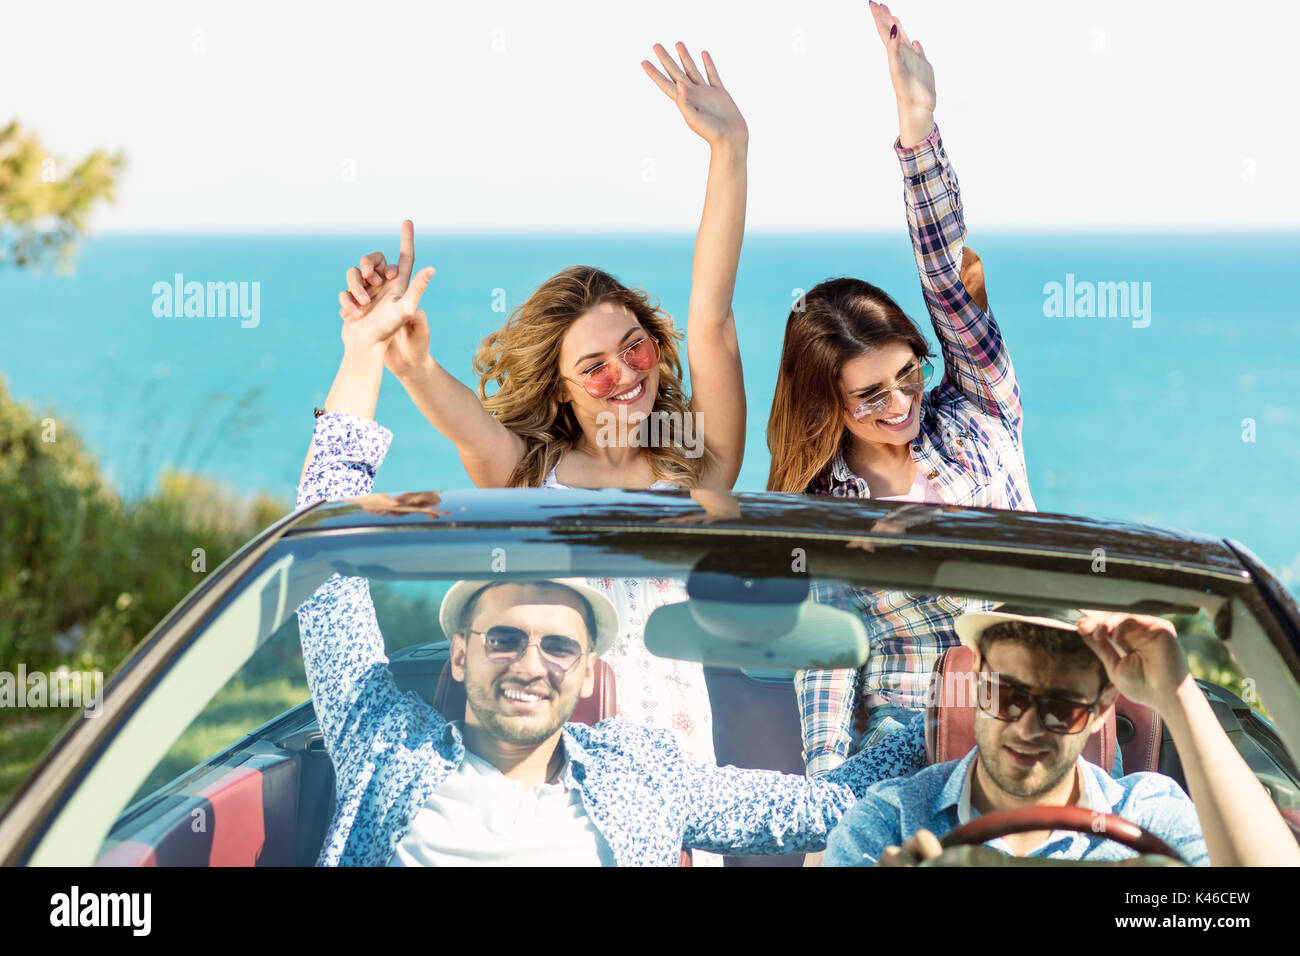 Schöne Party Freund Mädchen tanzen in einem Auto am Strand glücklich  Stockfotografie - Alamy